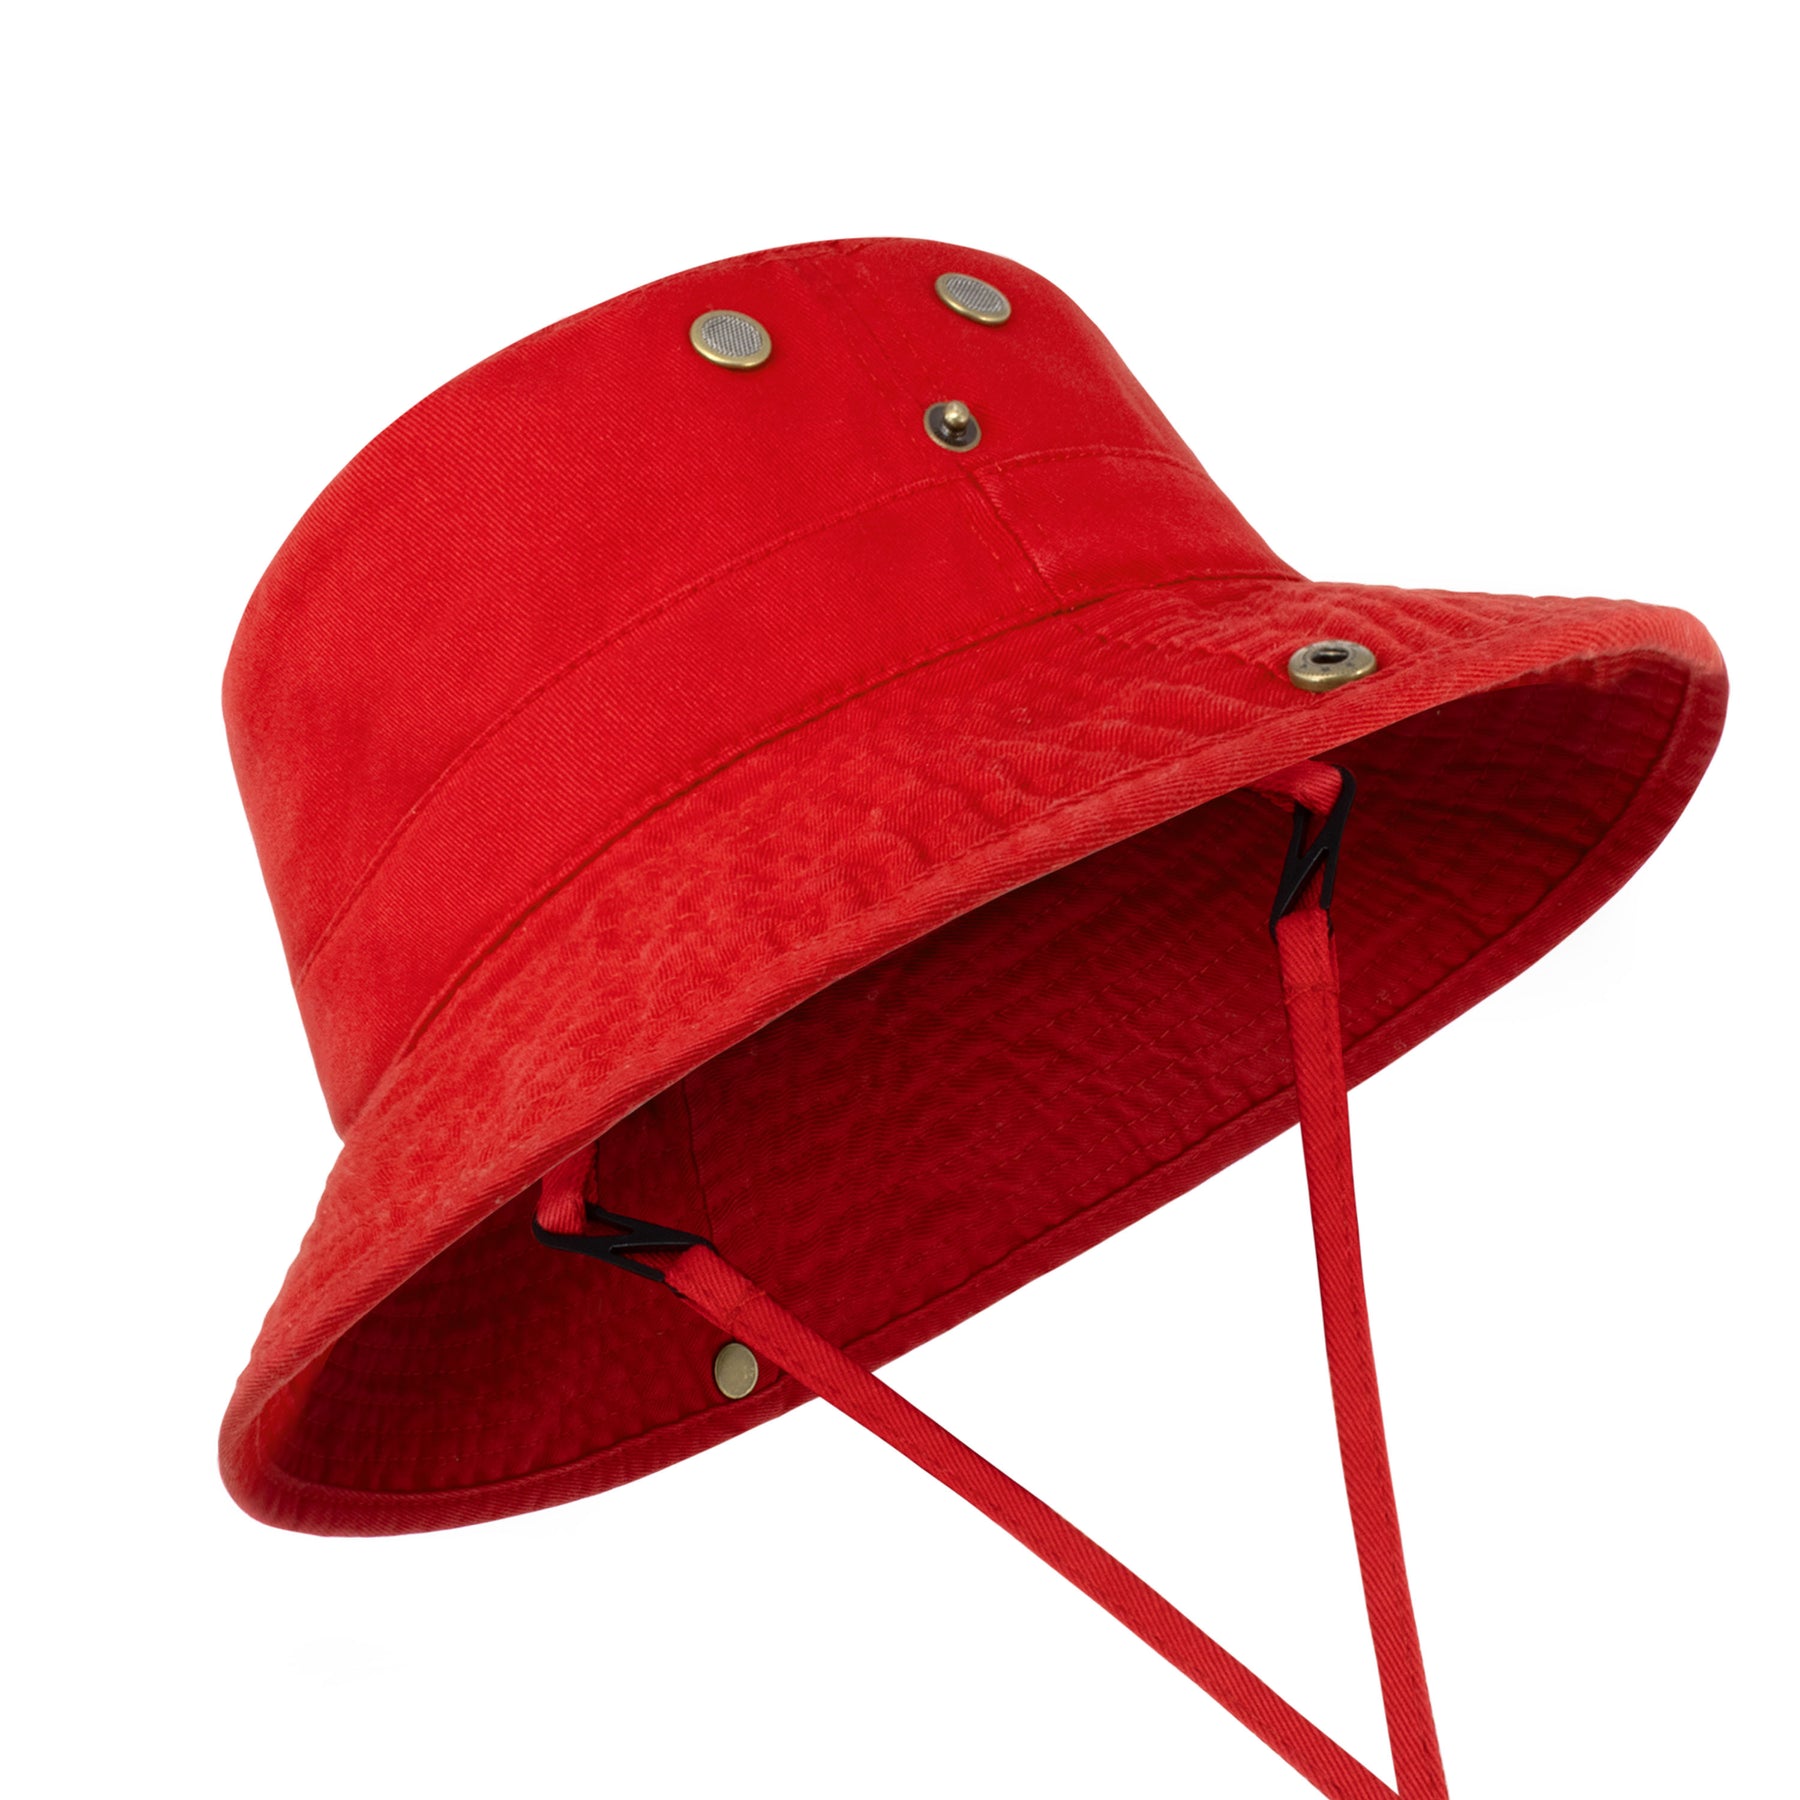 Wide Brim Bucket Hat